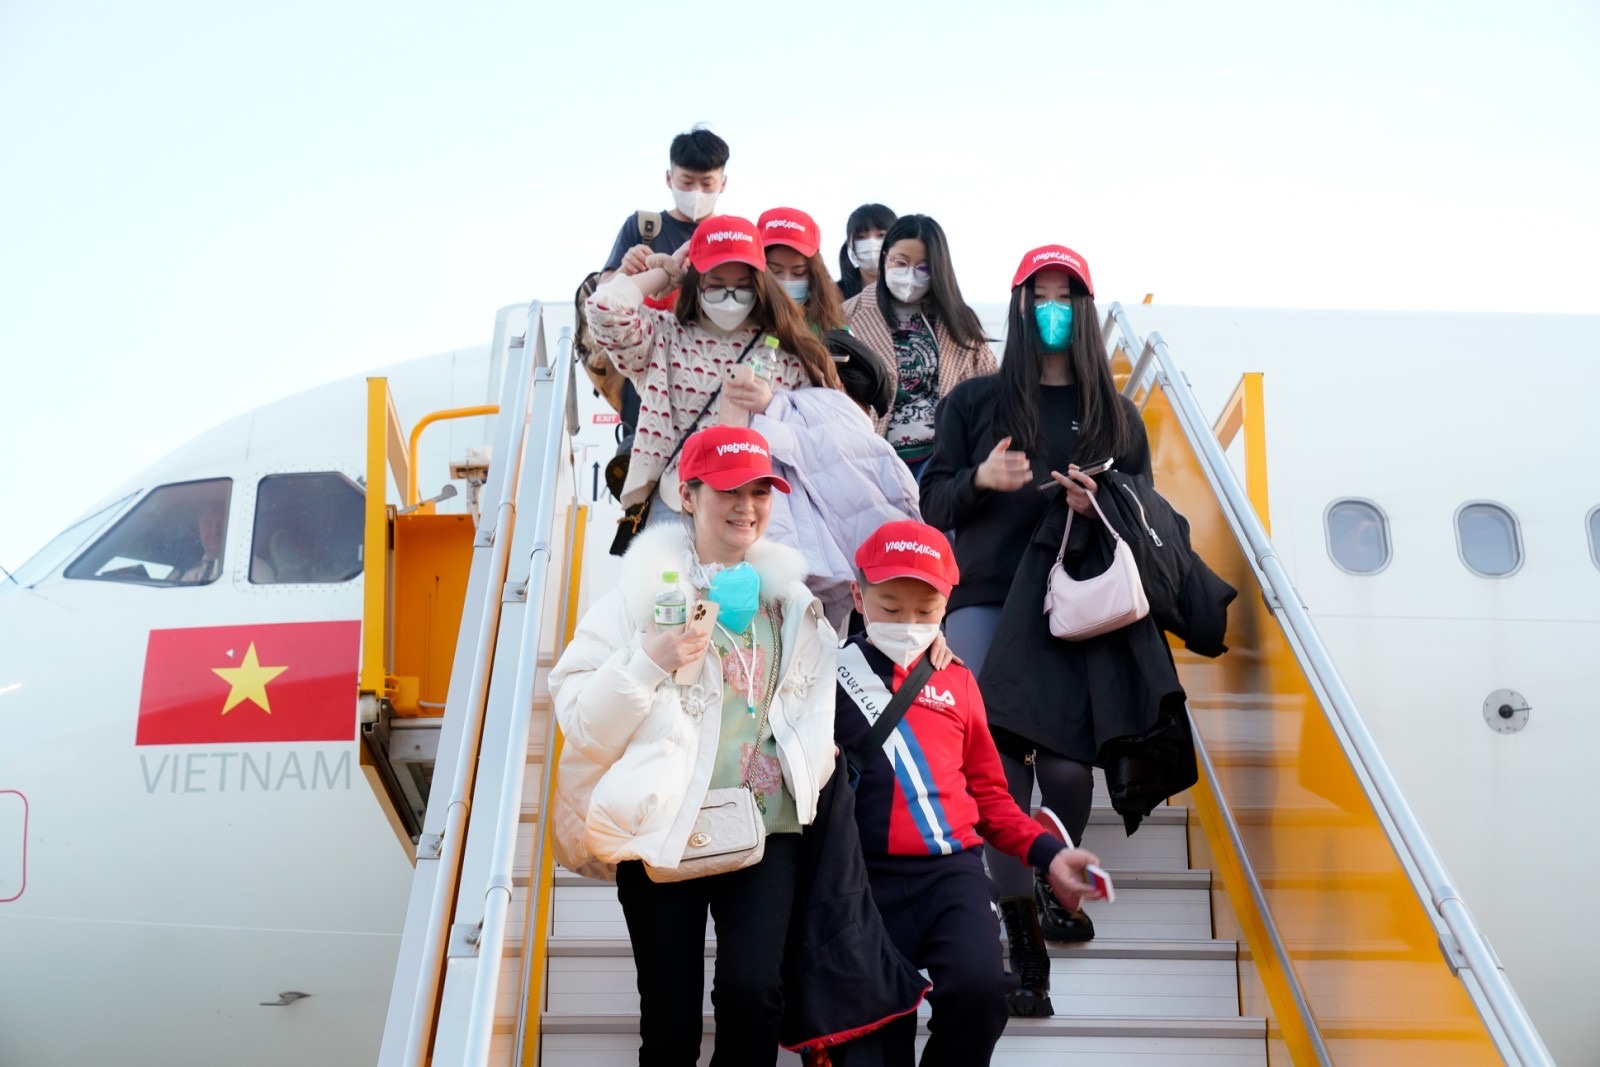 Du khách Trung Quốc háo hức khi đặt chân đến Nha Trang (Khánh Hoà). Ảnh: Ban tổ chức